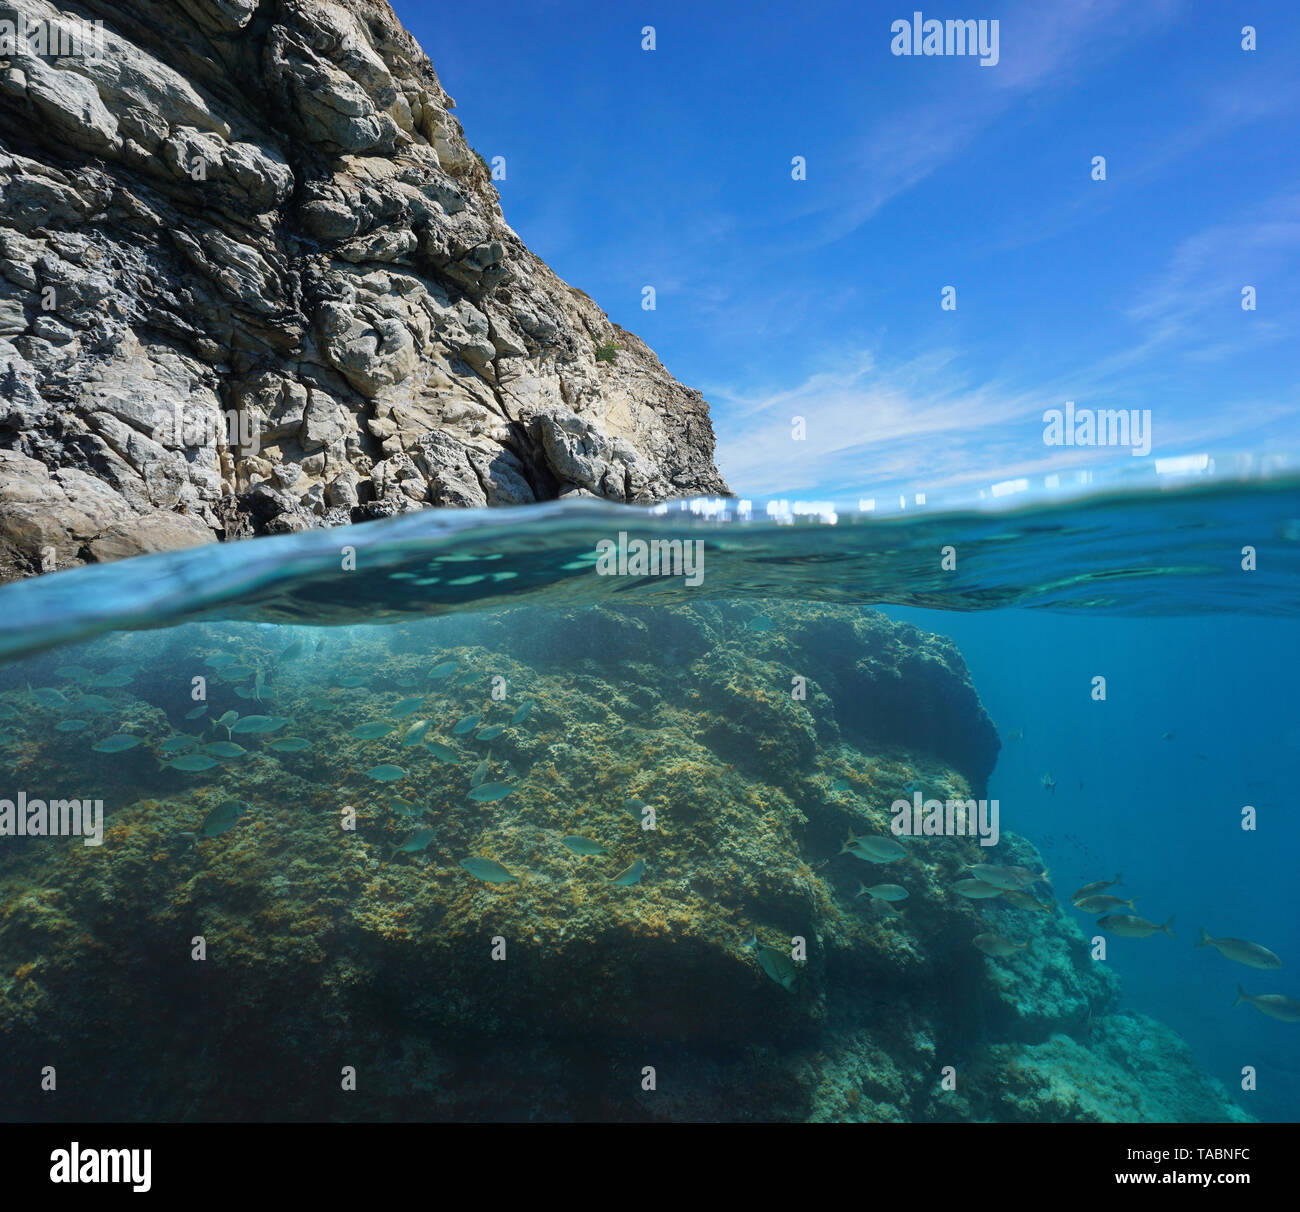 Côte Rocheuse sur et sous la surface de l'eau avec un banc de poissons, mer Méditerranée, France Banque D'Images